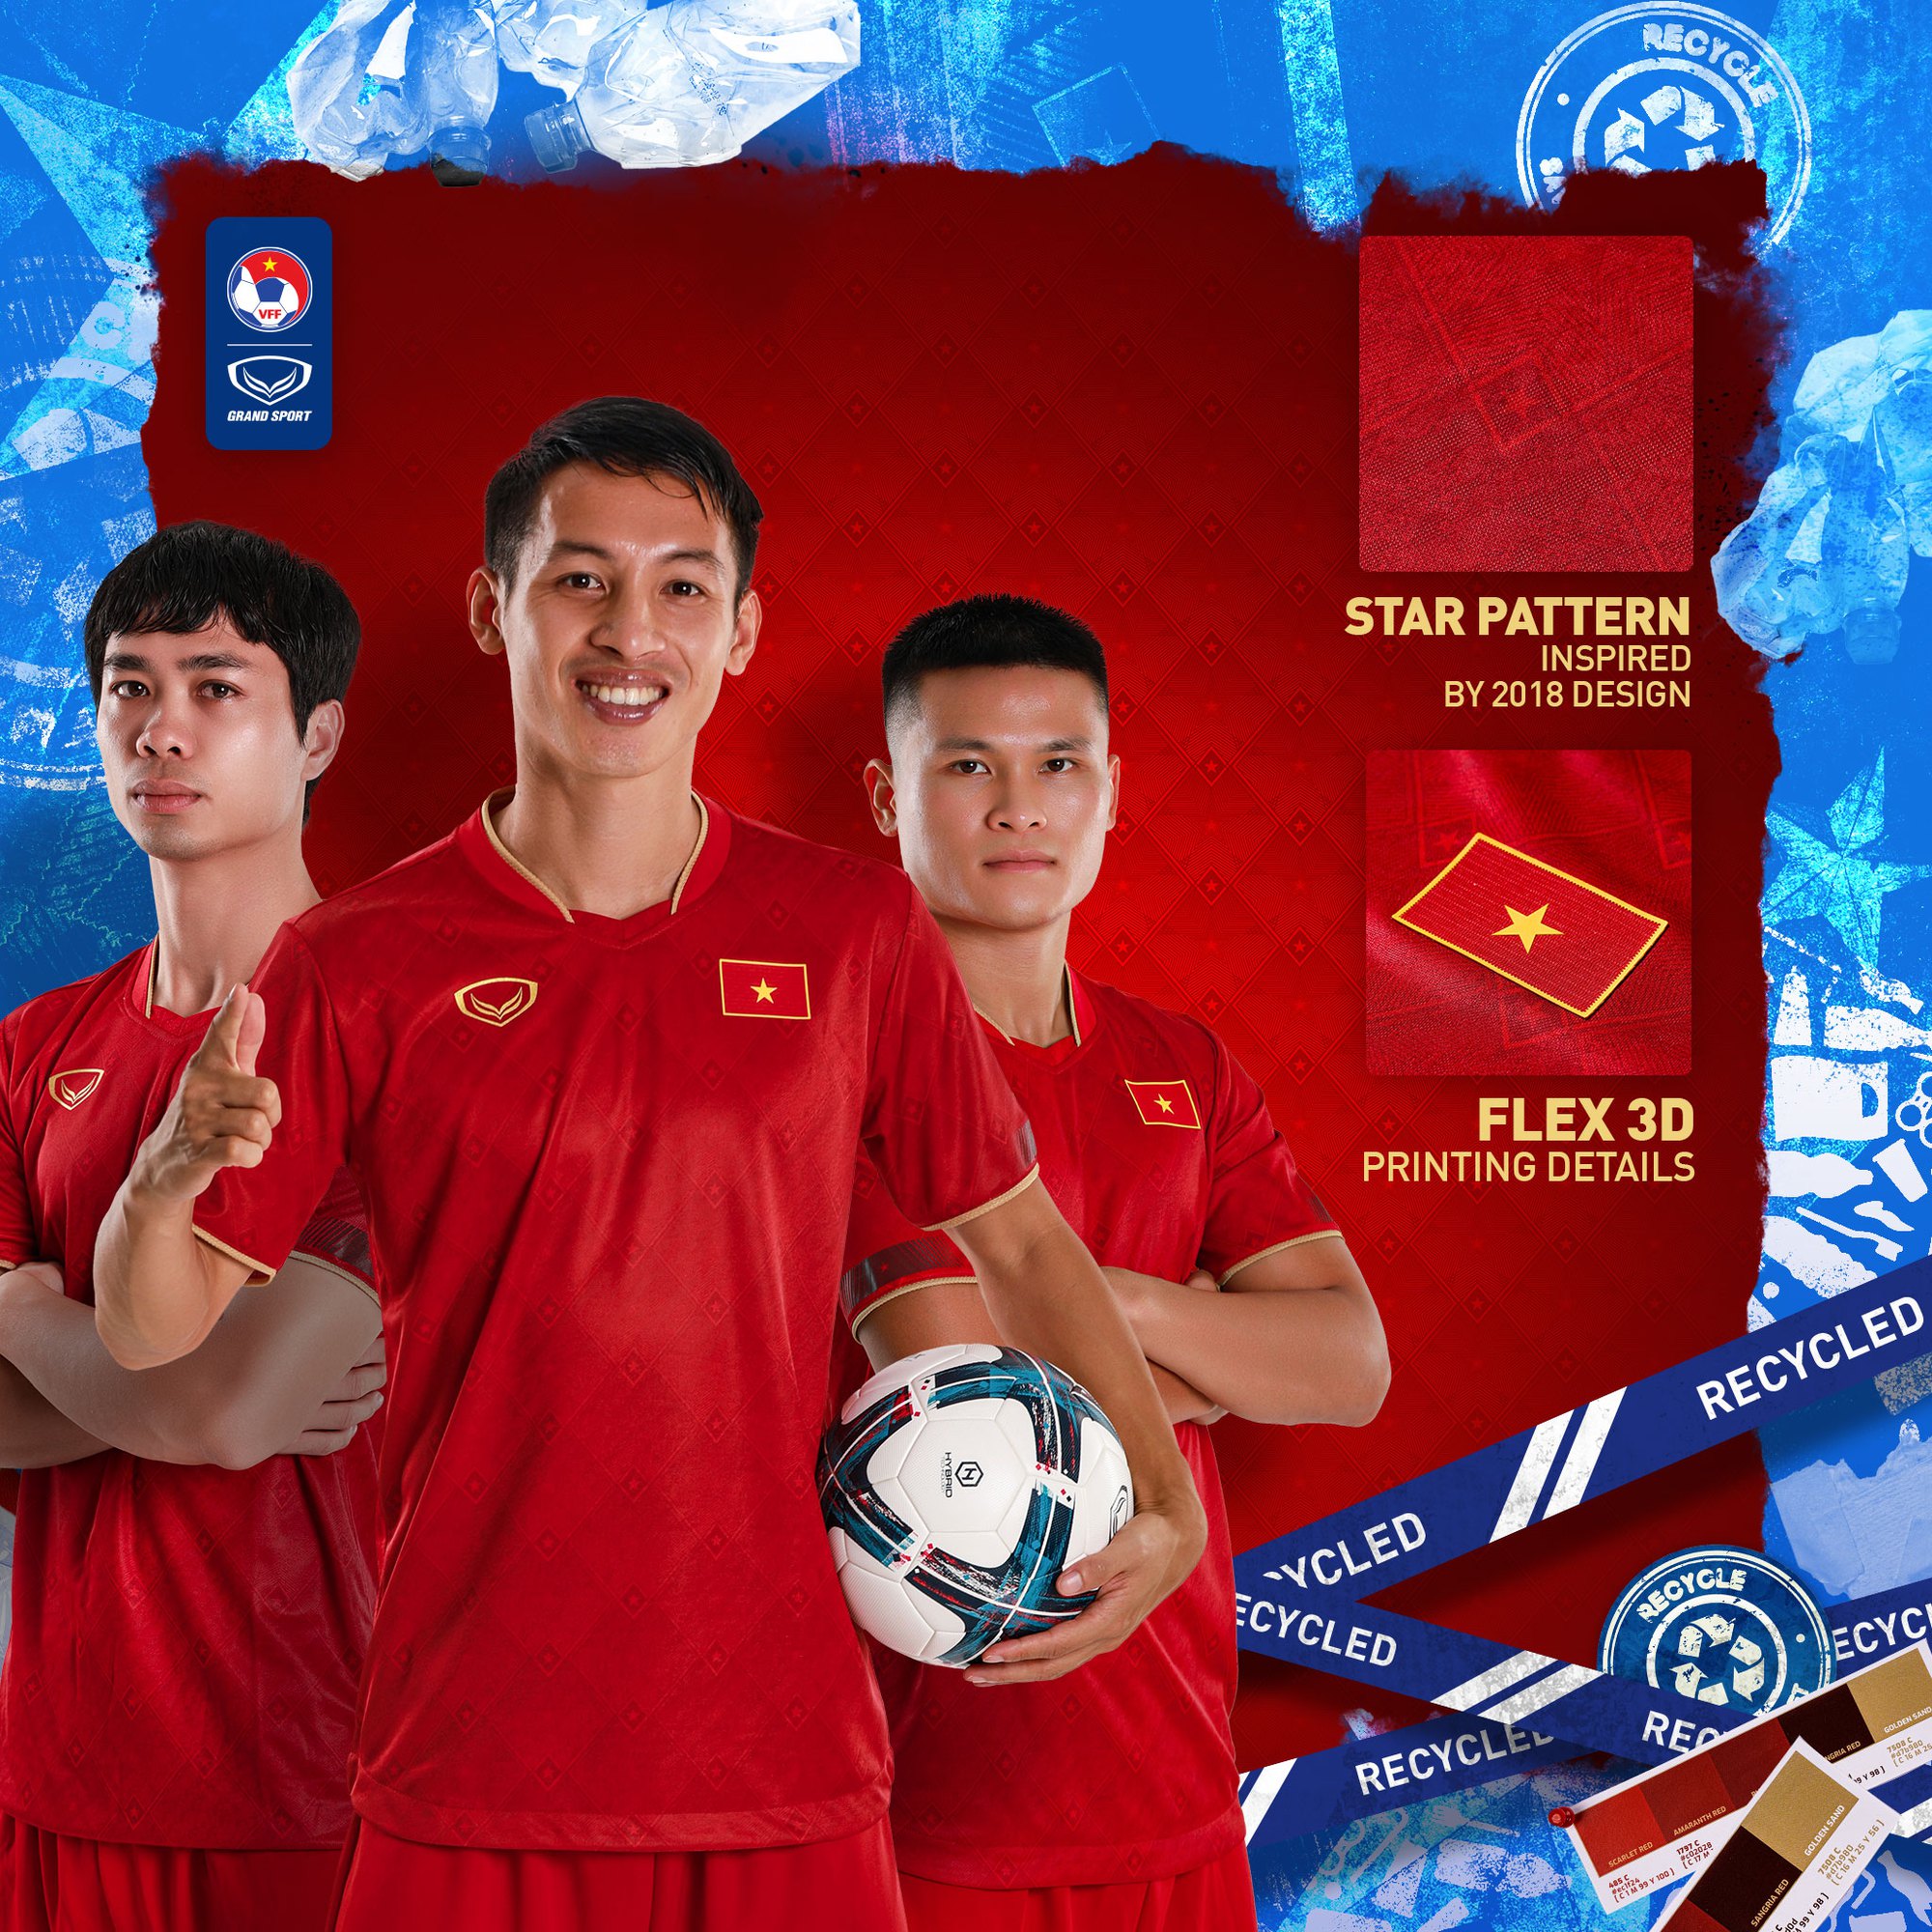 Áo đấu mới: Áo đấu mới của đội tuyển Việt Nam ấn tượng và độc đáo đến khó tin. Đây là một cơ hội tuyệt vời để bắt đầu đầu đãi mắt với những thiết kế đẹp mắt này!